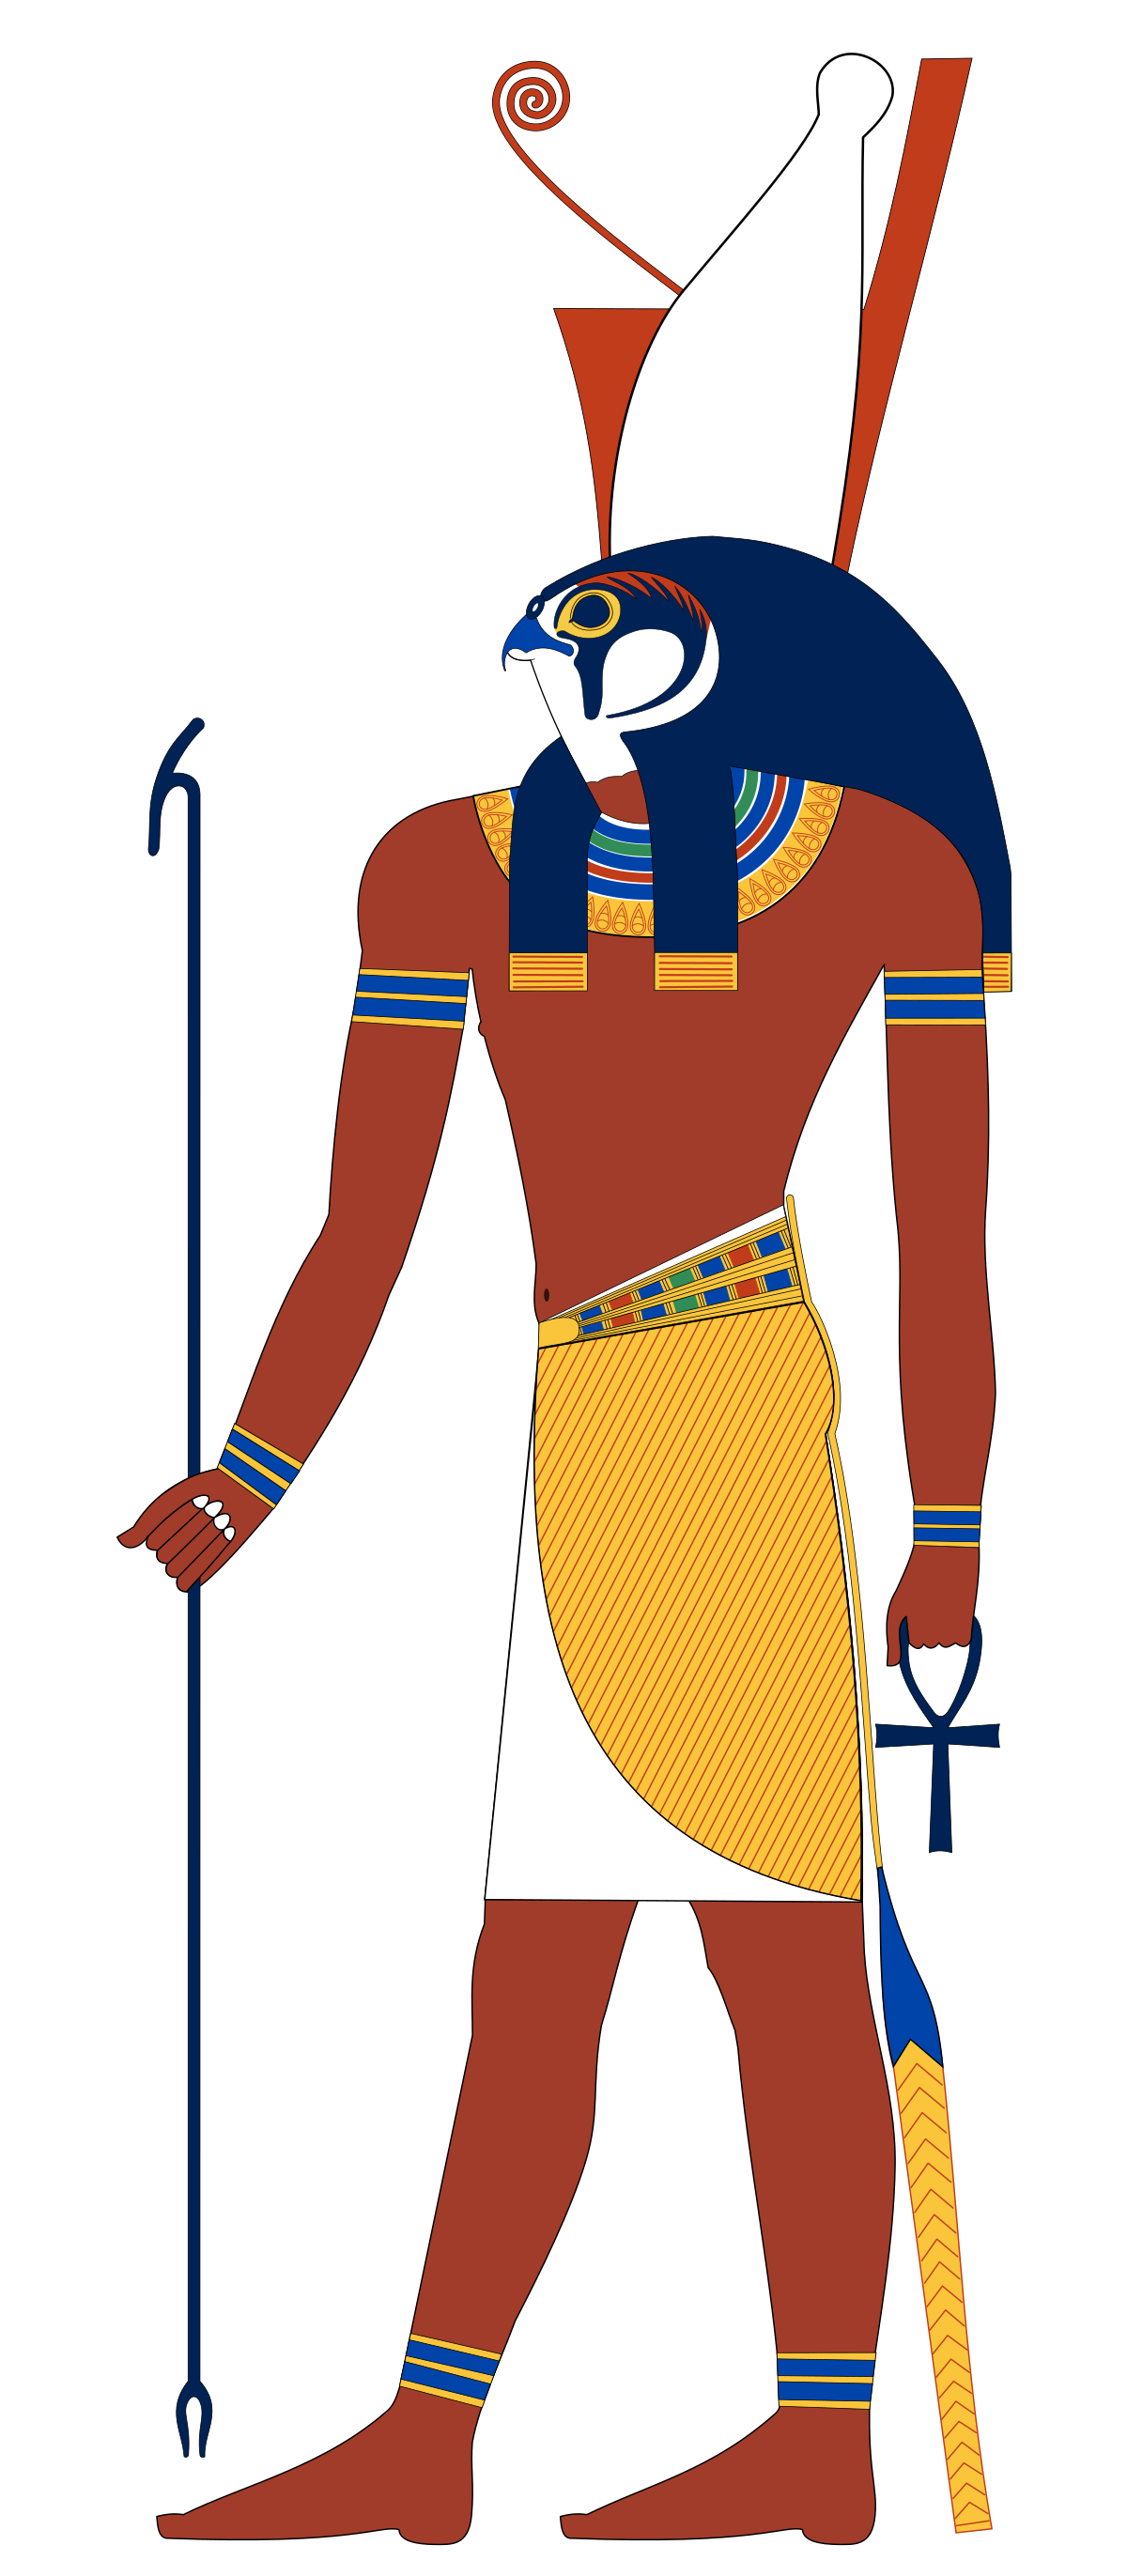 Vị thần Ai Cập là những siêu hero tôn thờ của những người Ai Cập cổ xưa, được cho rằng sở hữu tài năng trấn áp những nhân tố ngẫu nhiên và nhân bạn dạng cuộc sống thường ngày. Hãy ngắm nhìn hình hình họa rất đẹp của những vị thần vô viễn tượng Ai Cập cổ xưa.